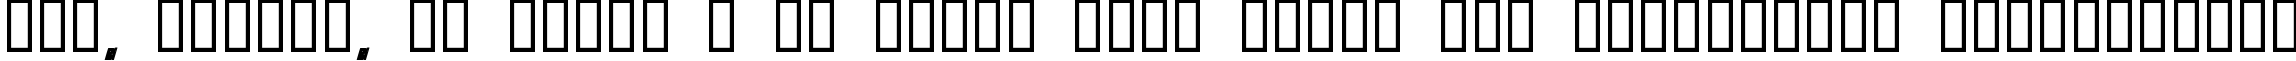 Пример написания шрифтом KonQa Black текста на украинском